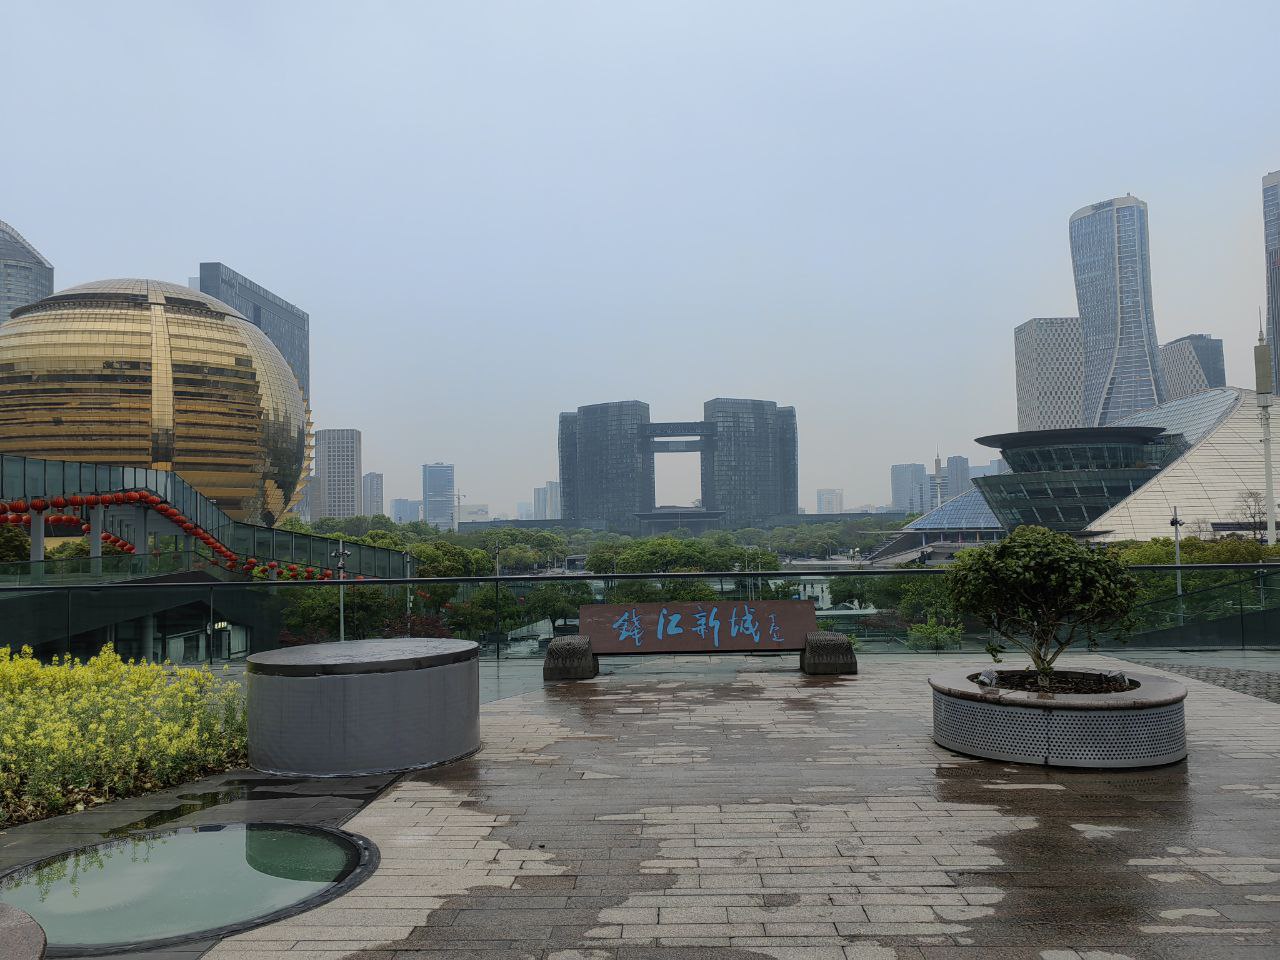 城市建筑奇观——杭州国际会议中心（左），杭州市民中心（中），杭州大剧院（右）